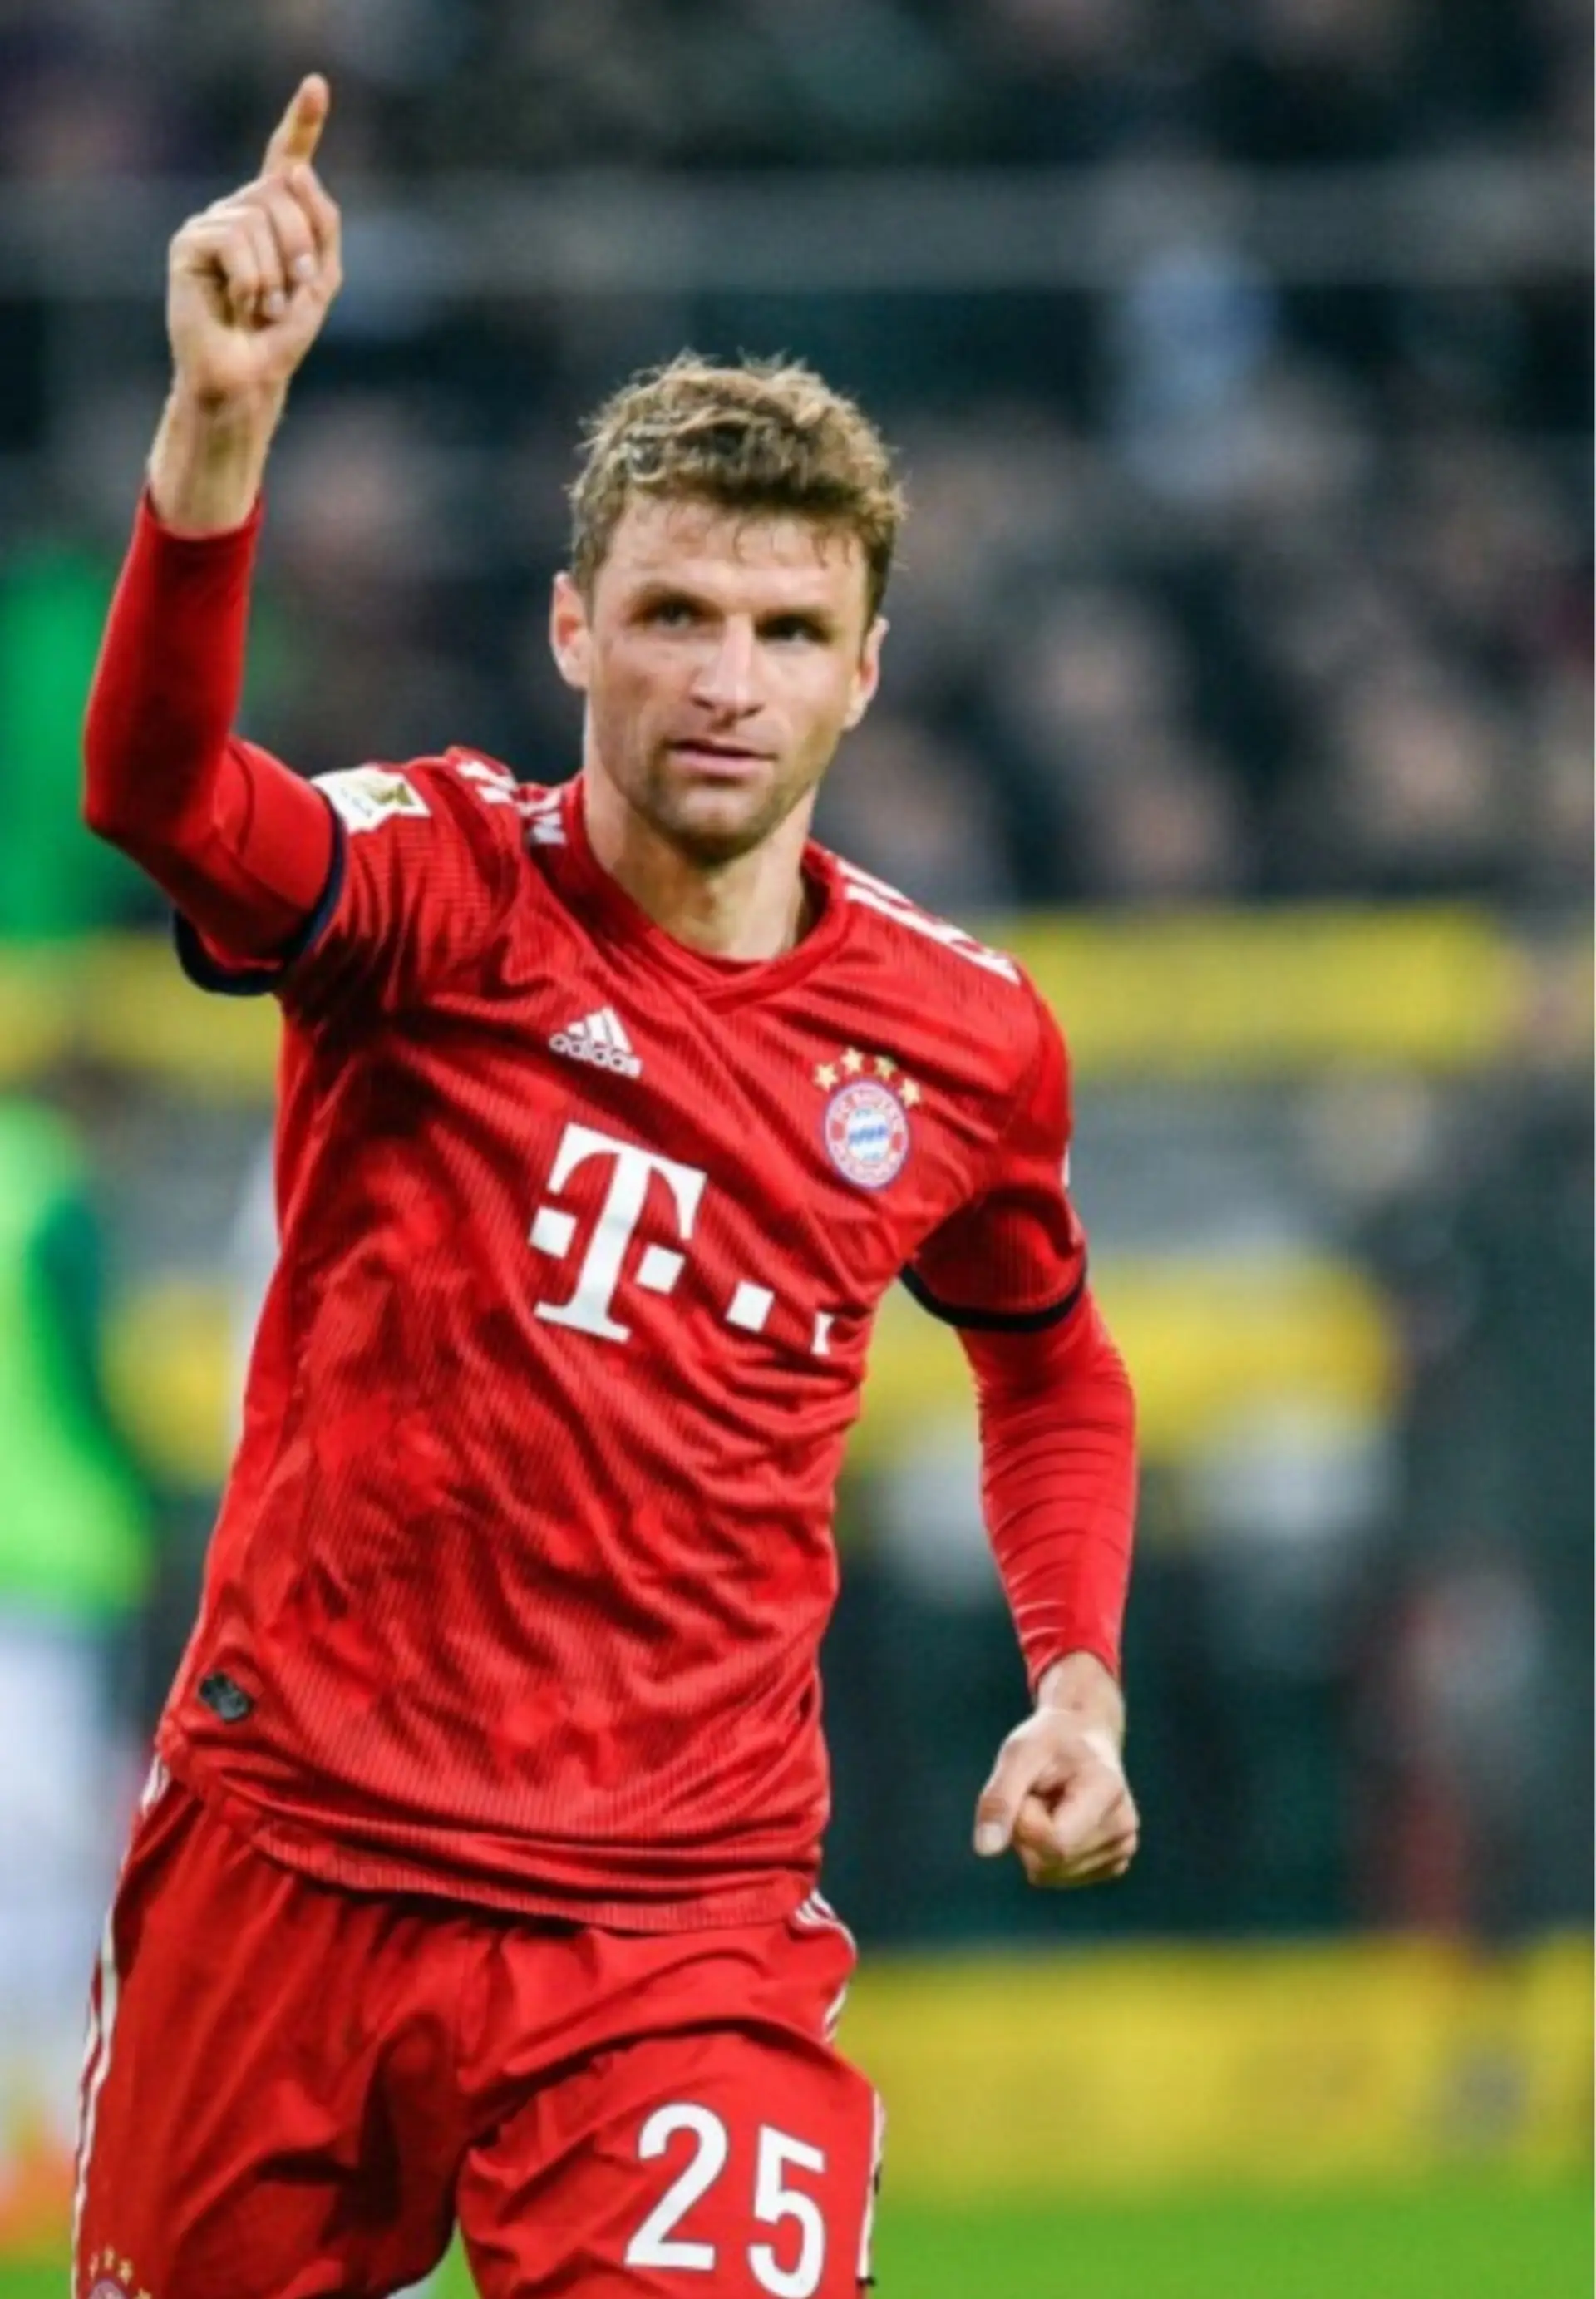 Thomas das Herz für Bayern.Thomas ist einfach ein guter Spieler er macht die Bayern zu einem super Team!😀